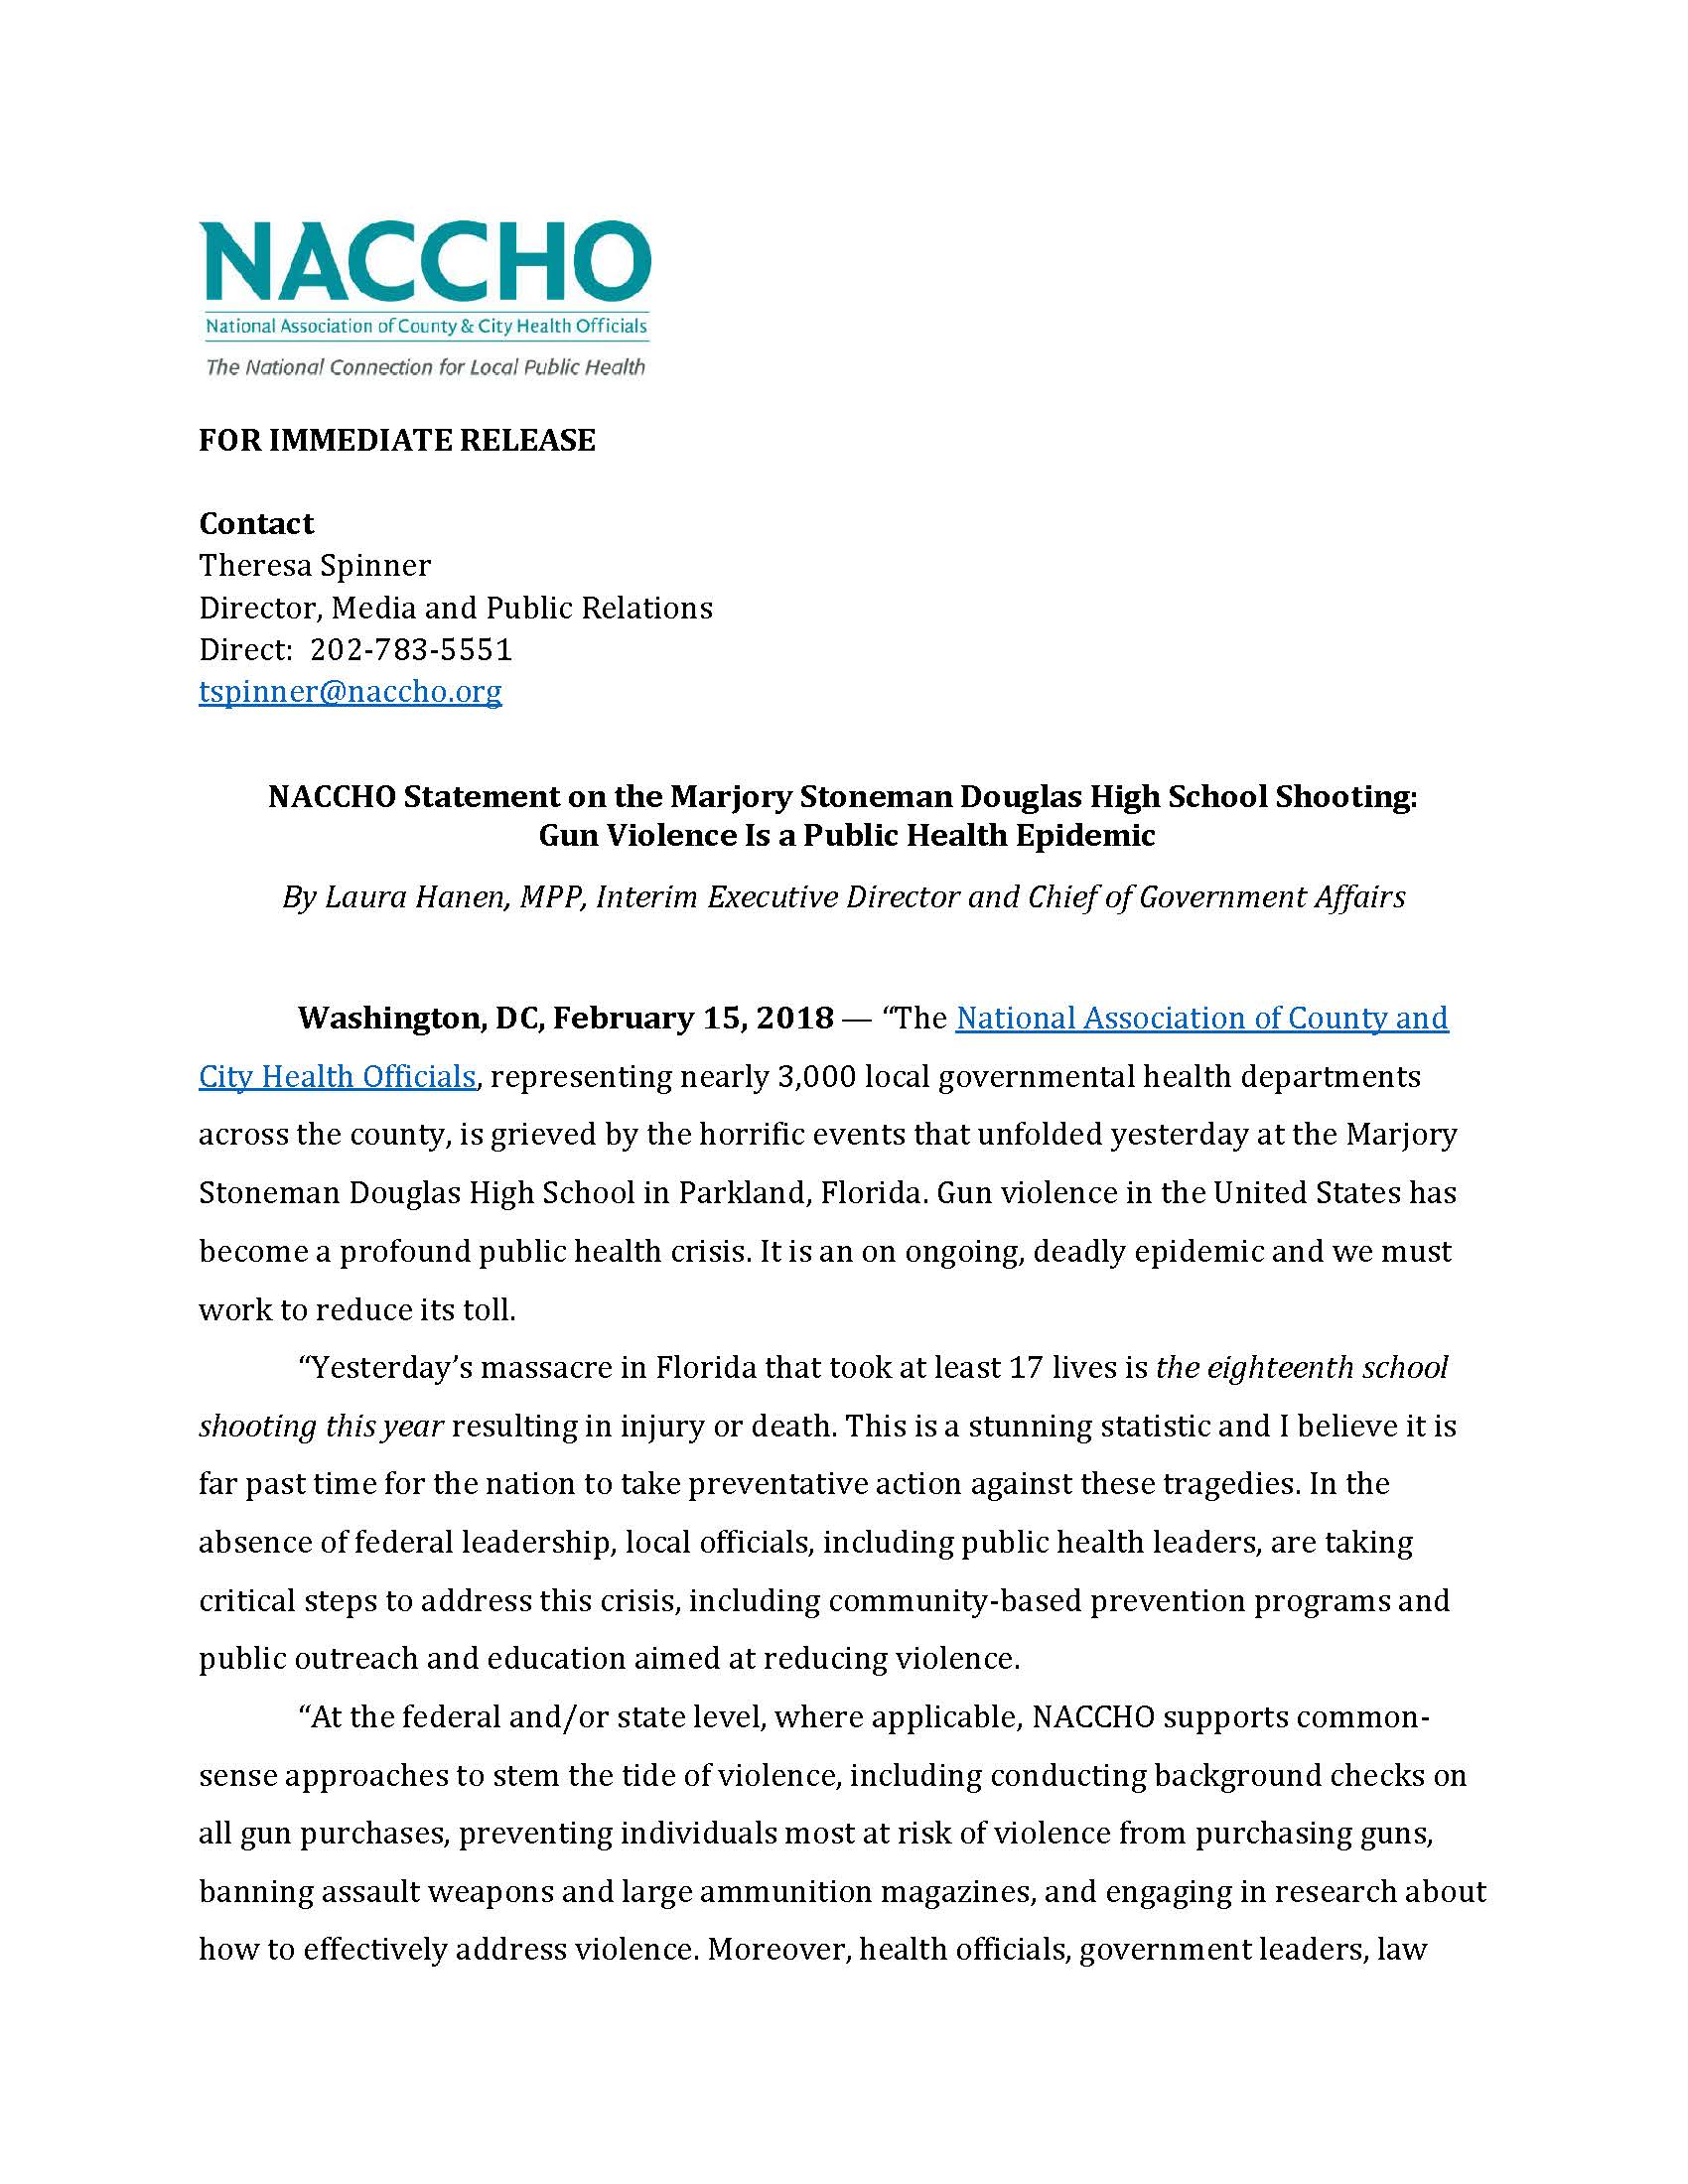 NACCHO Florida School Massacre Statement 2.15.18_Page_1